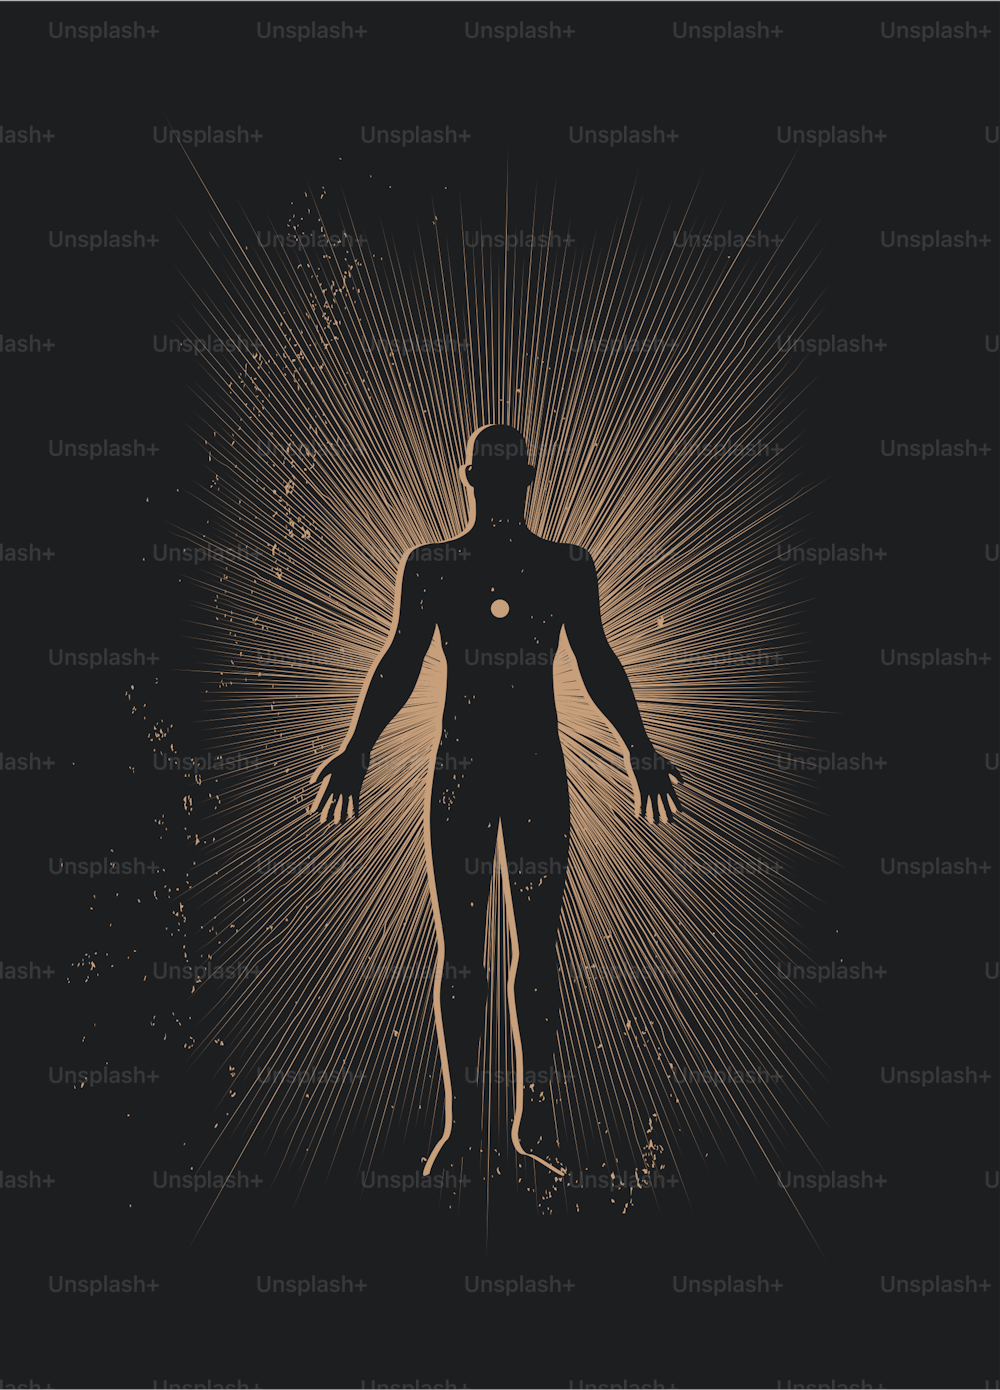 영적인 인체 실루엣은 검은 배경에 태양 광선을 둘러싸고 있다. 트랜스 또는 명상 또는 아스트랄체 개념 그림은 포스터 또는 벽 예술 인쇄 디자인을 위한 것입니다. 벡터 eps 10 그림